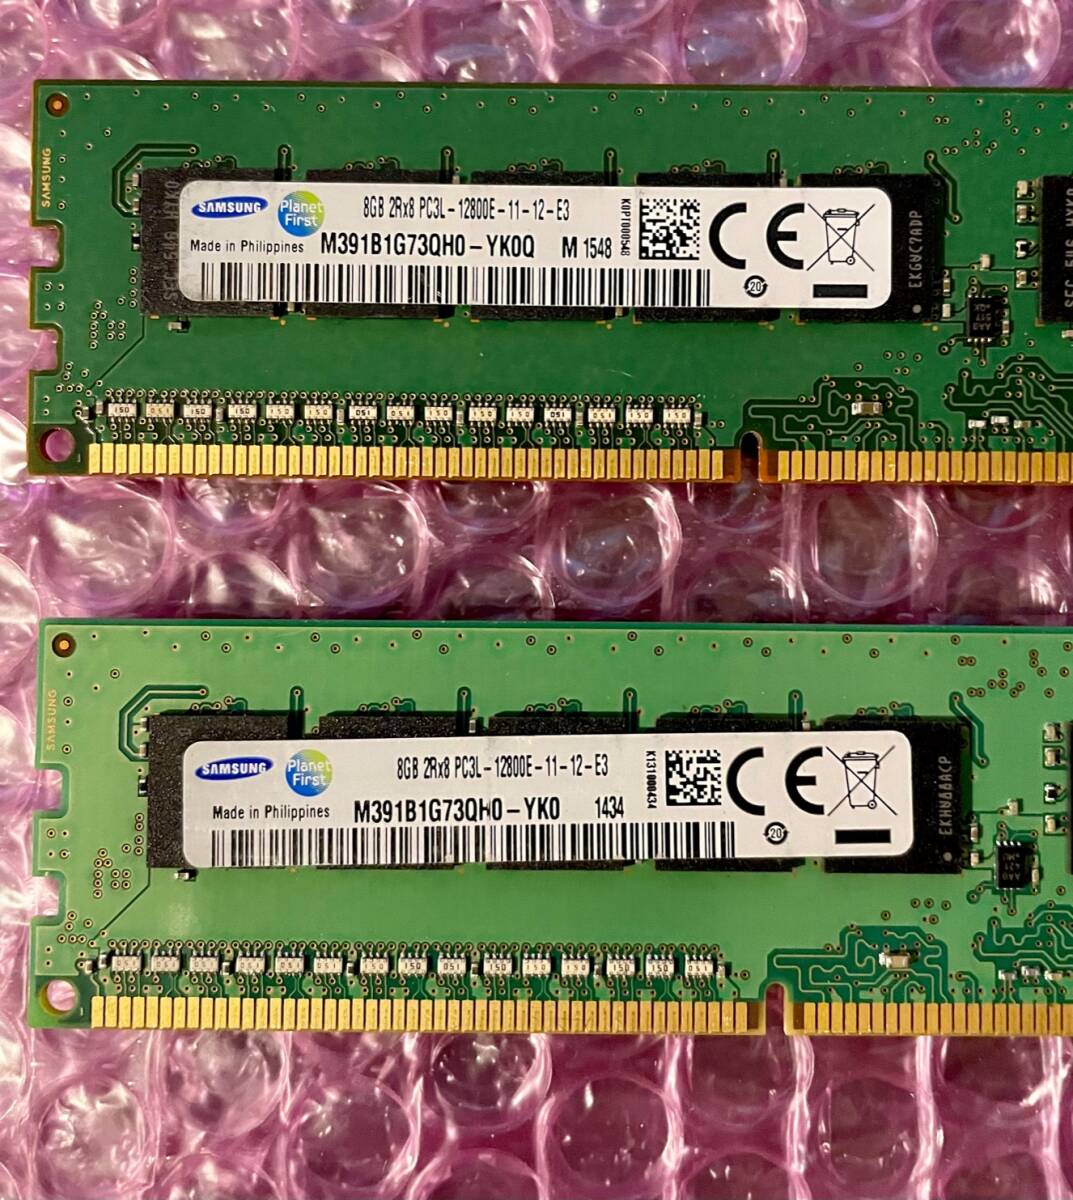 W050☆ SAMSUNG DDR3L PC3L-12800E-11-12-E3 ECC 8GB ×2計16GB Memory メモリー 動作確認済み_画像2